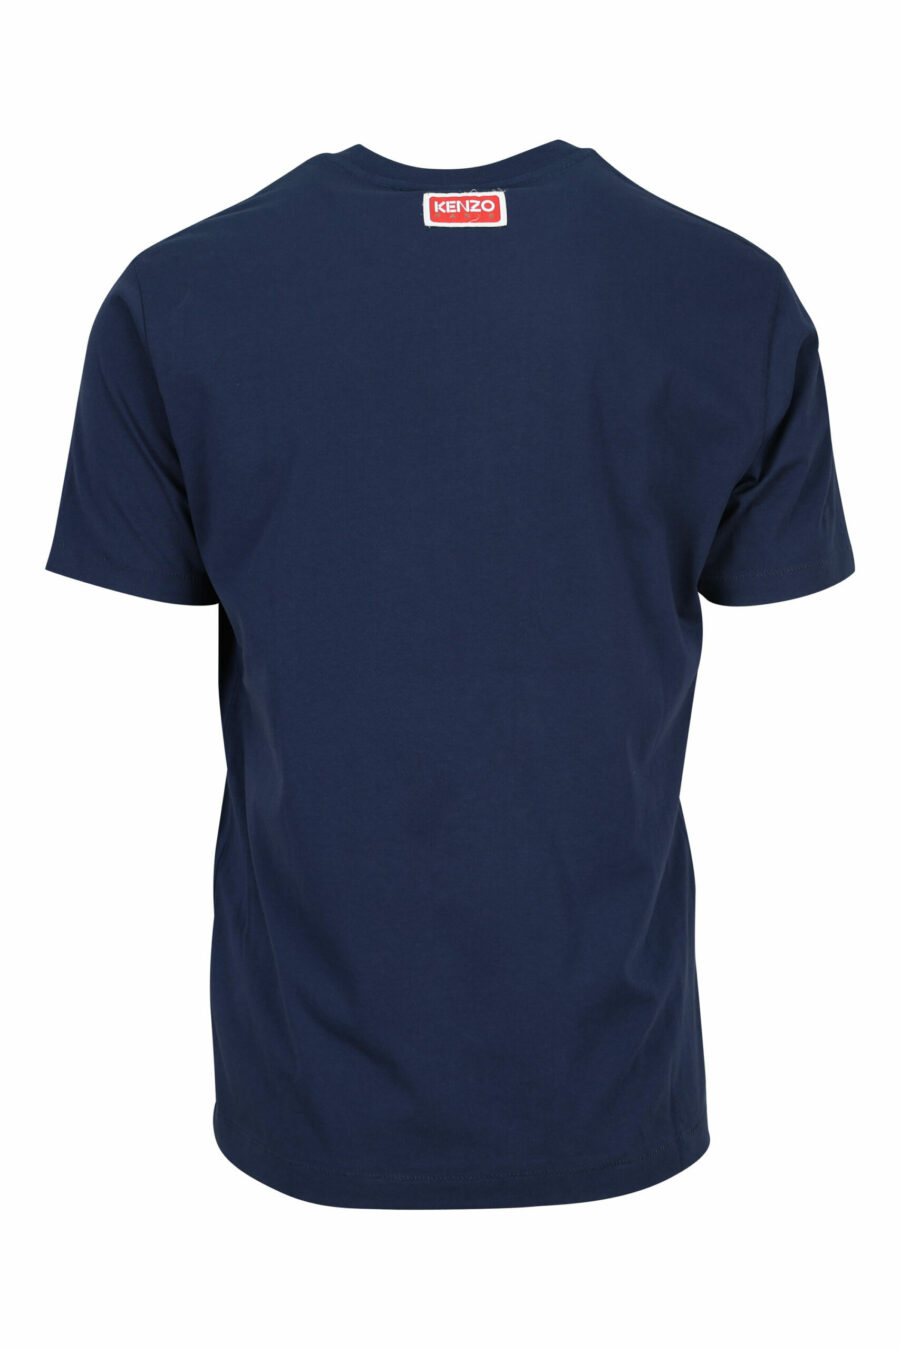 T-shirt azul com o logótipo "flor" - 3612230465732 1 à escala